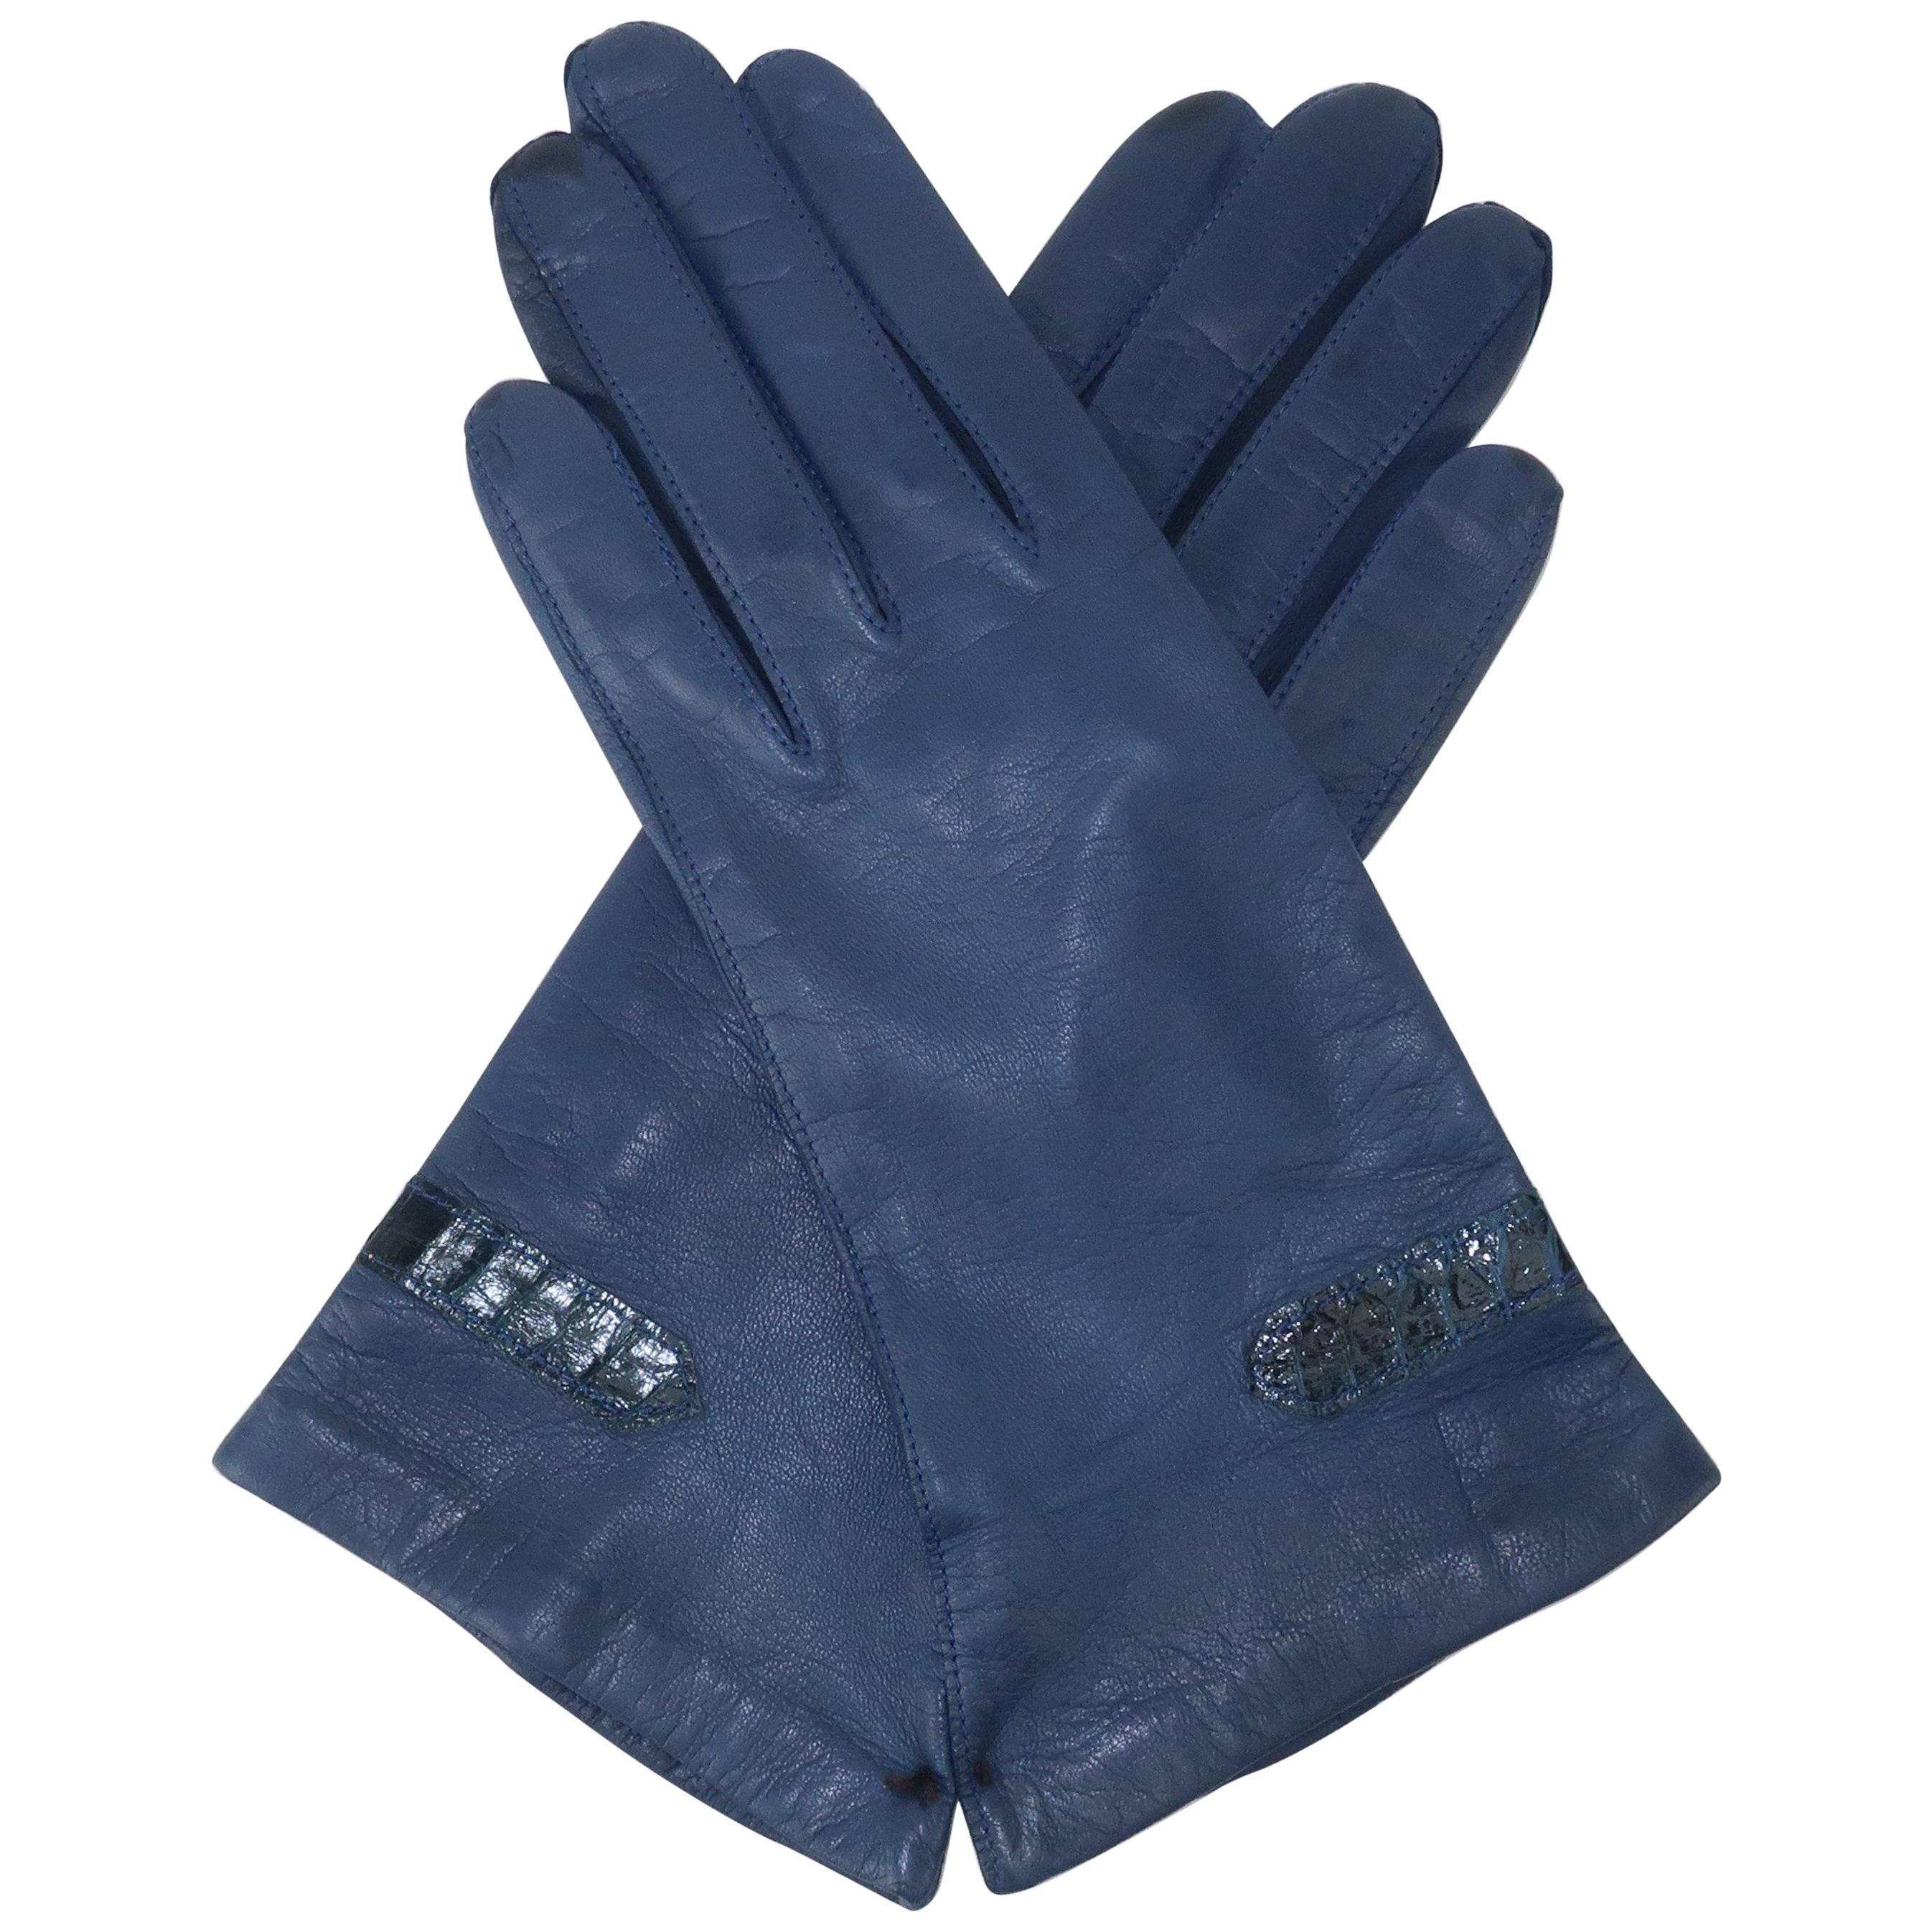 Vintage Blue Leather Gloves With Snakeskin Details